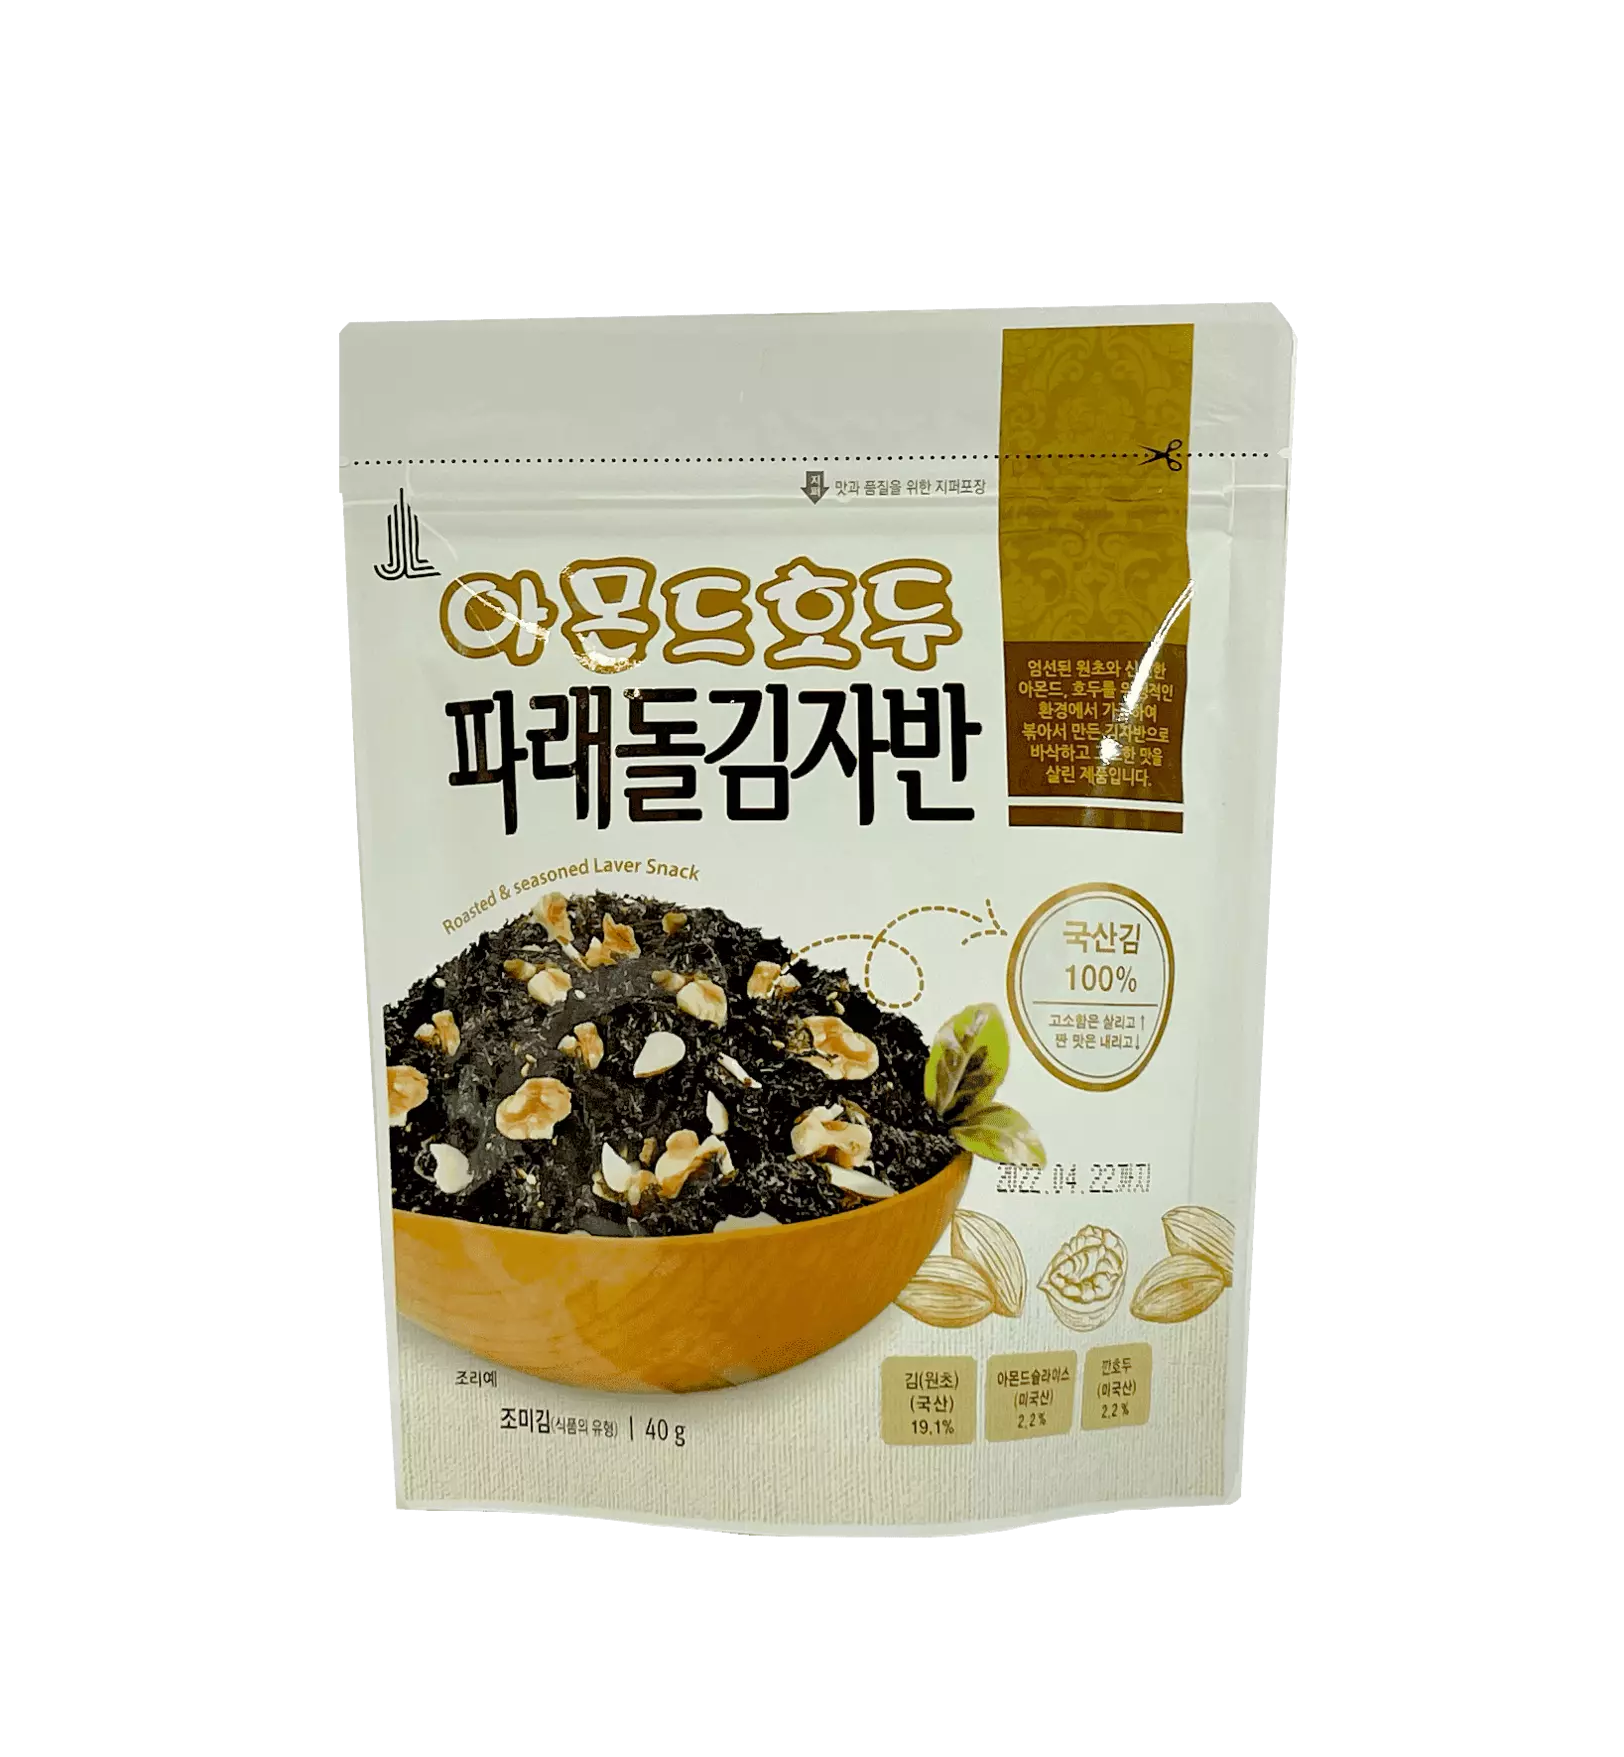 Roasted/Seasoned Seaweed Snacks With Almond/Walnut Sliced 40g Korea